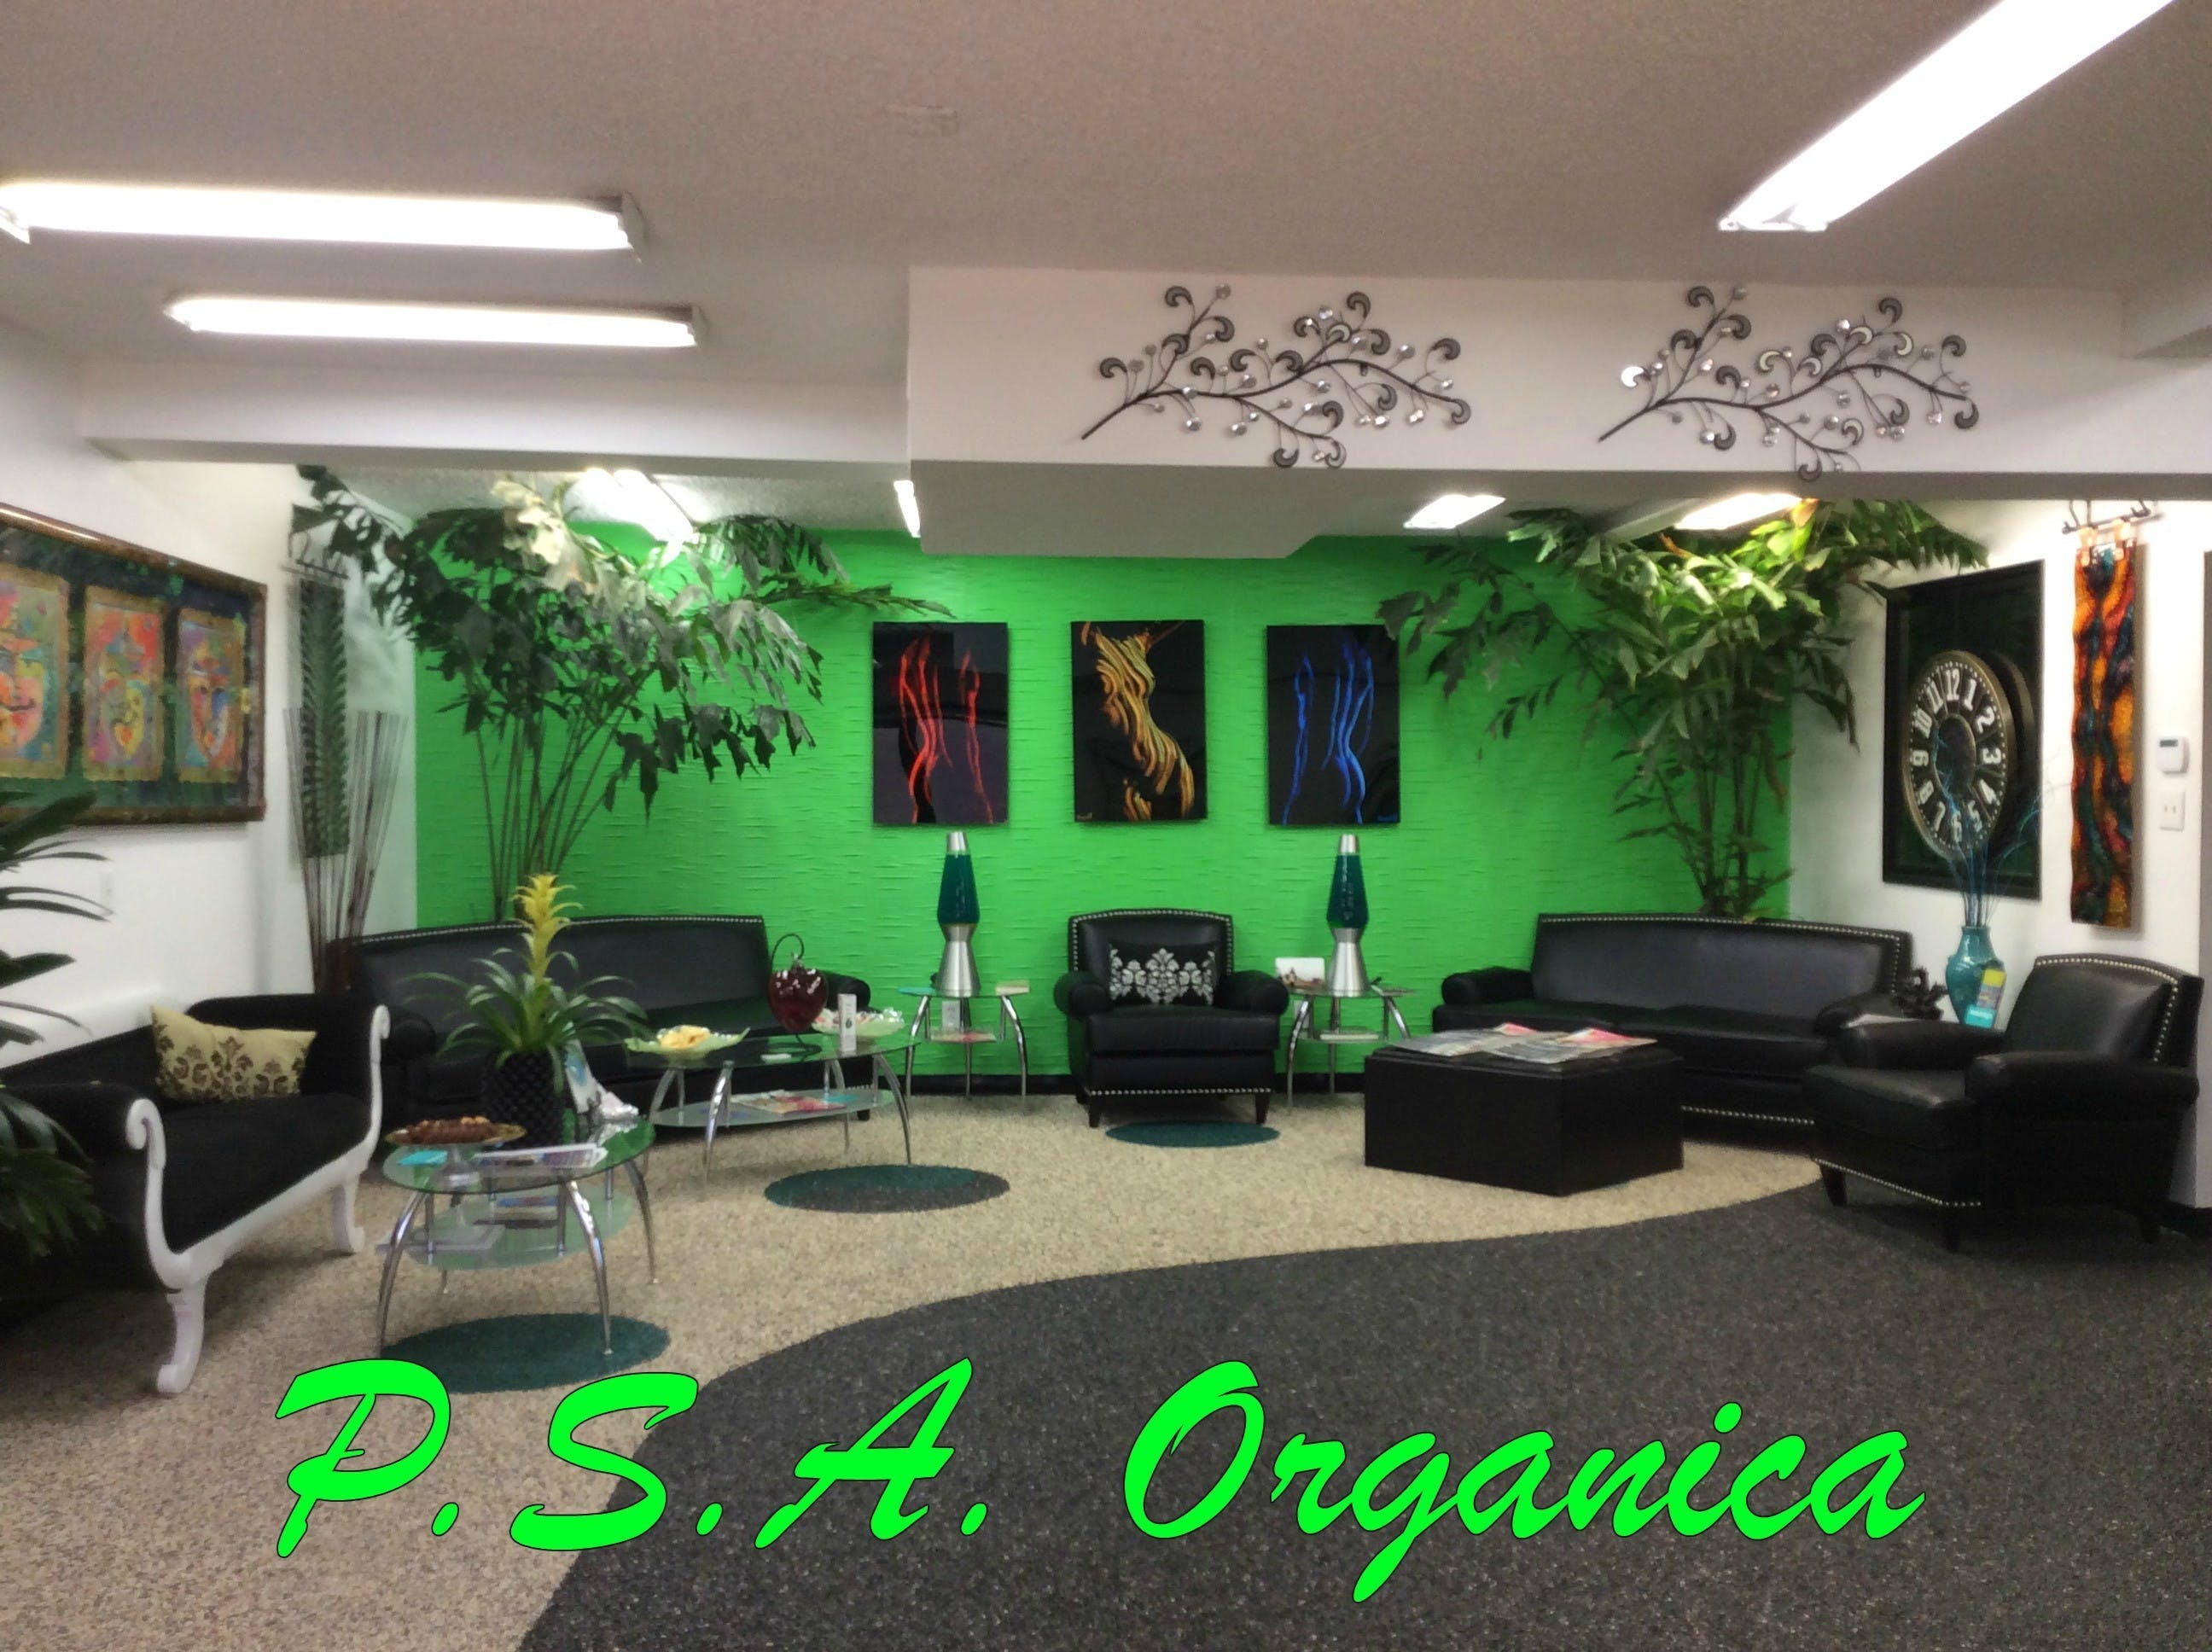 PSA Organica - Medical Marijuana Doctors - Cannabizme.com